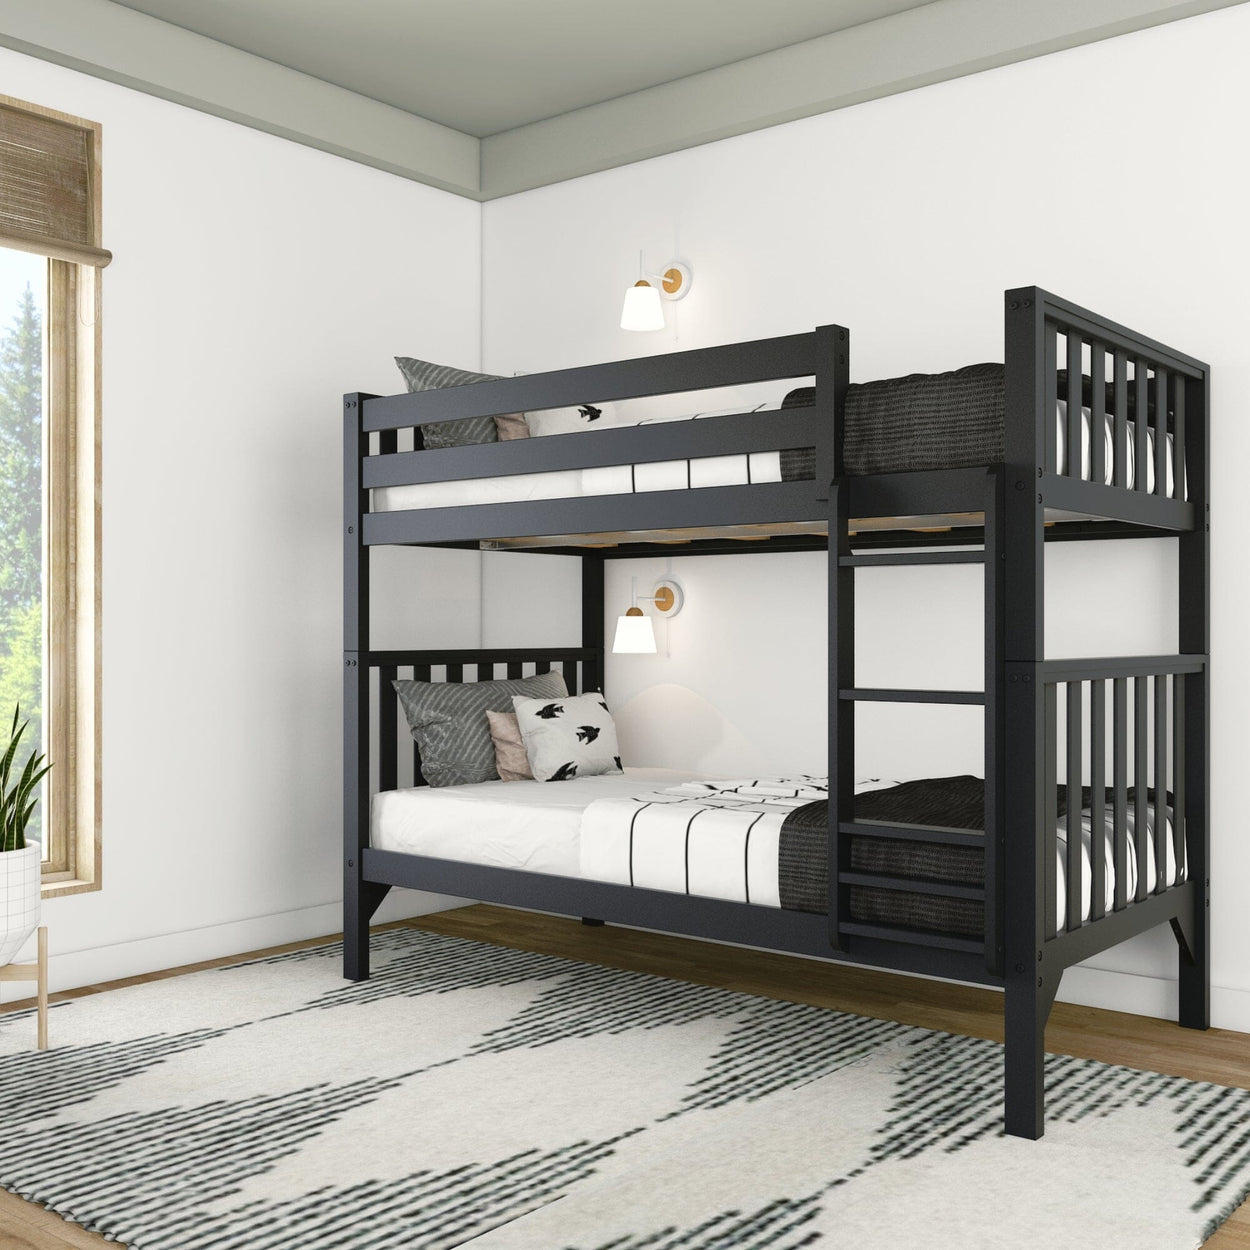 210201-170 : Bunk Beds Scandinavian Twin over Twin Bunk Bed, Black